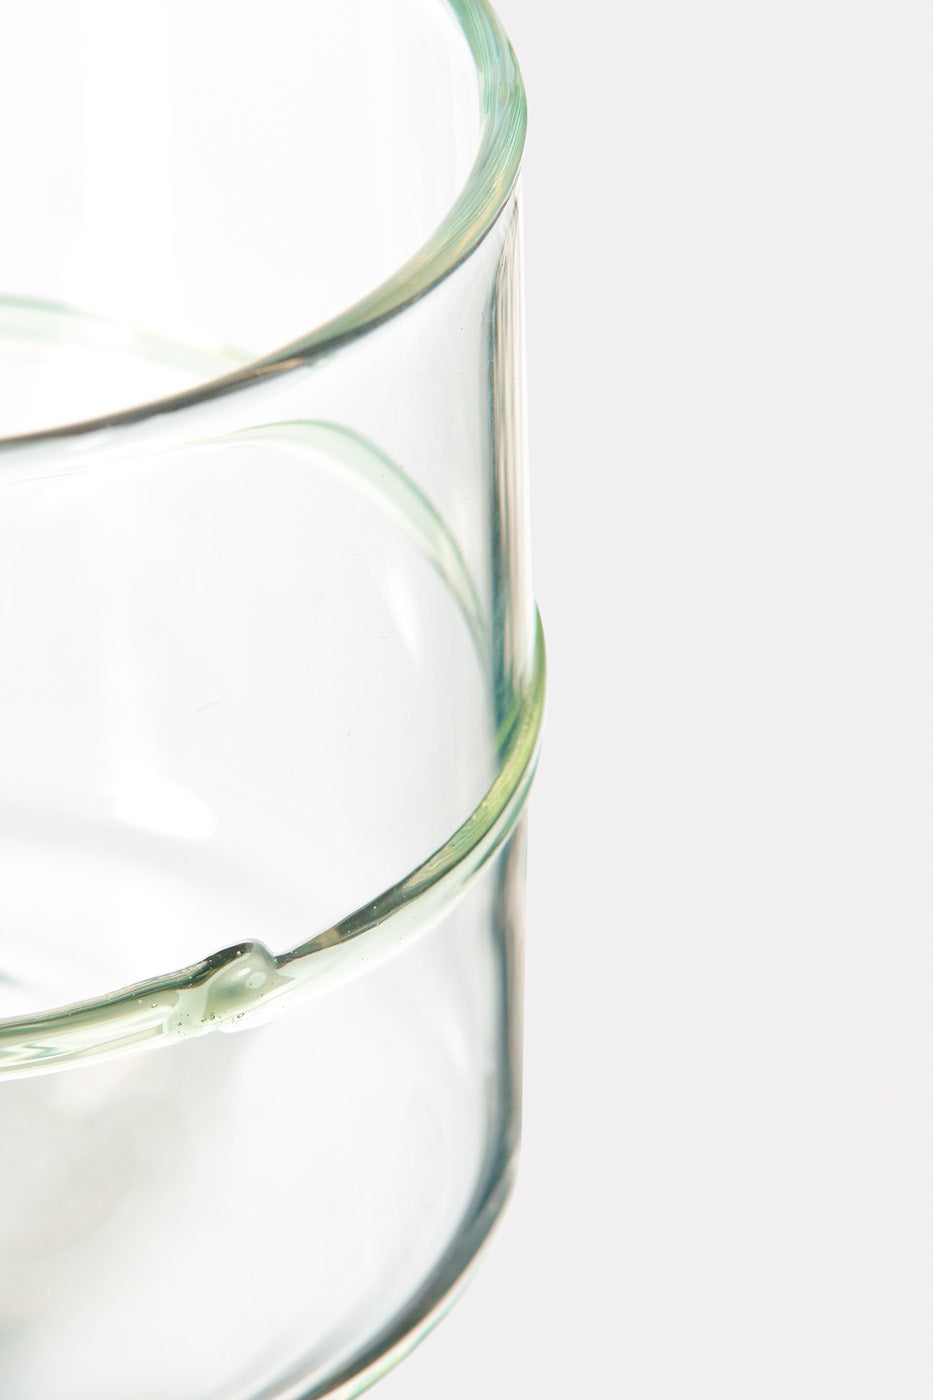 ACQUA E VINO - Green glass – Short